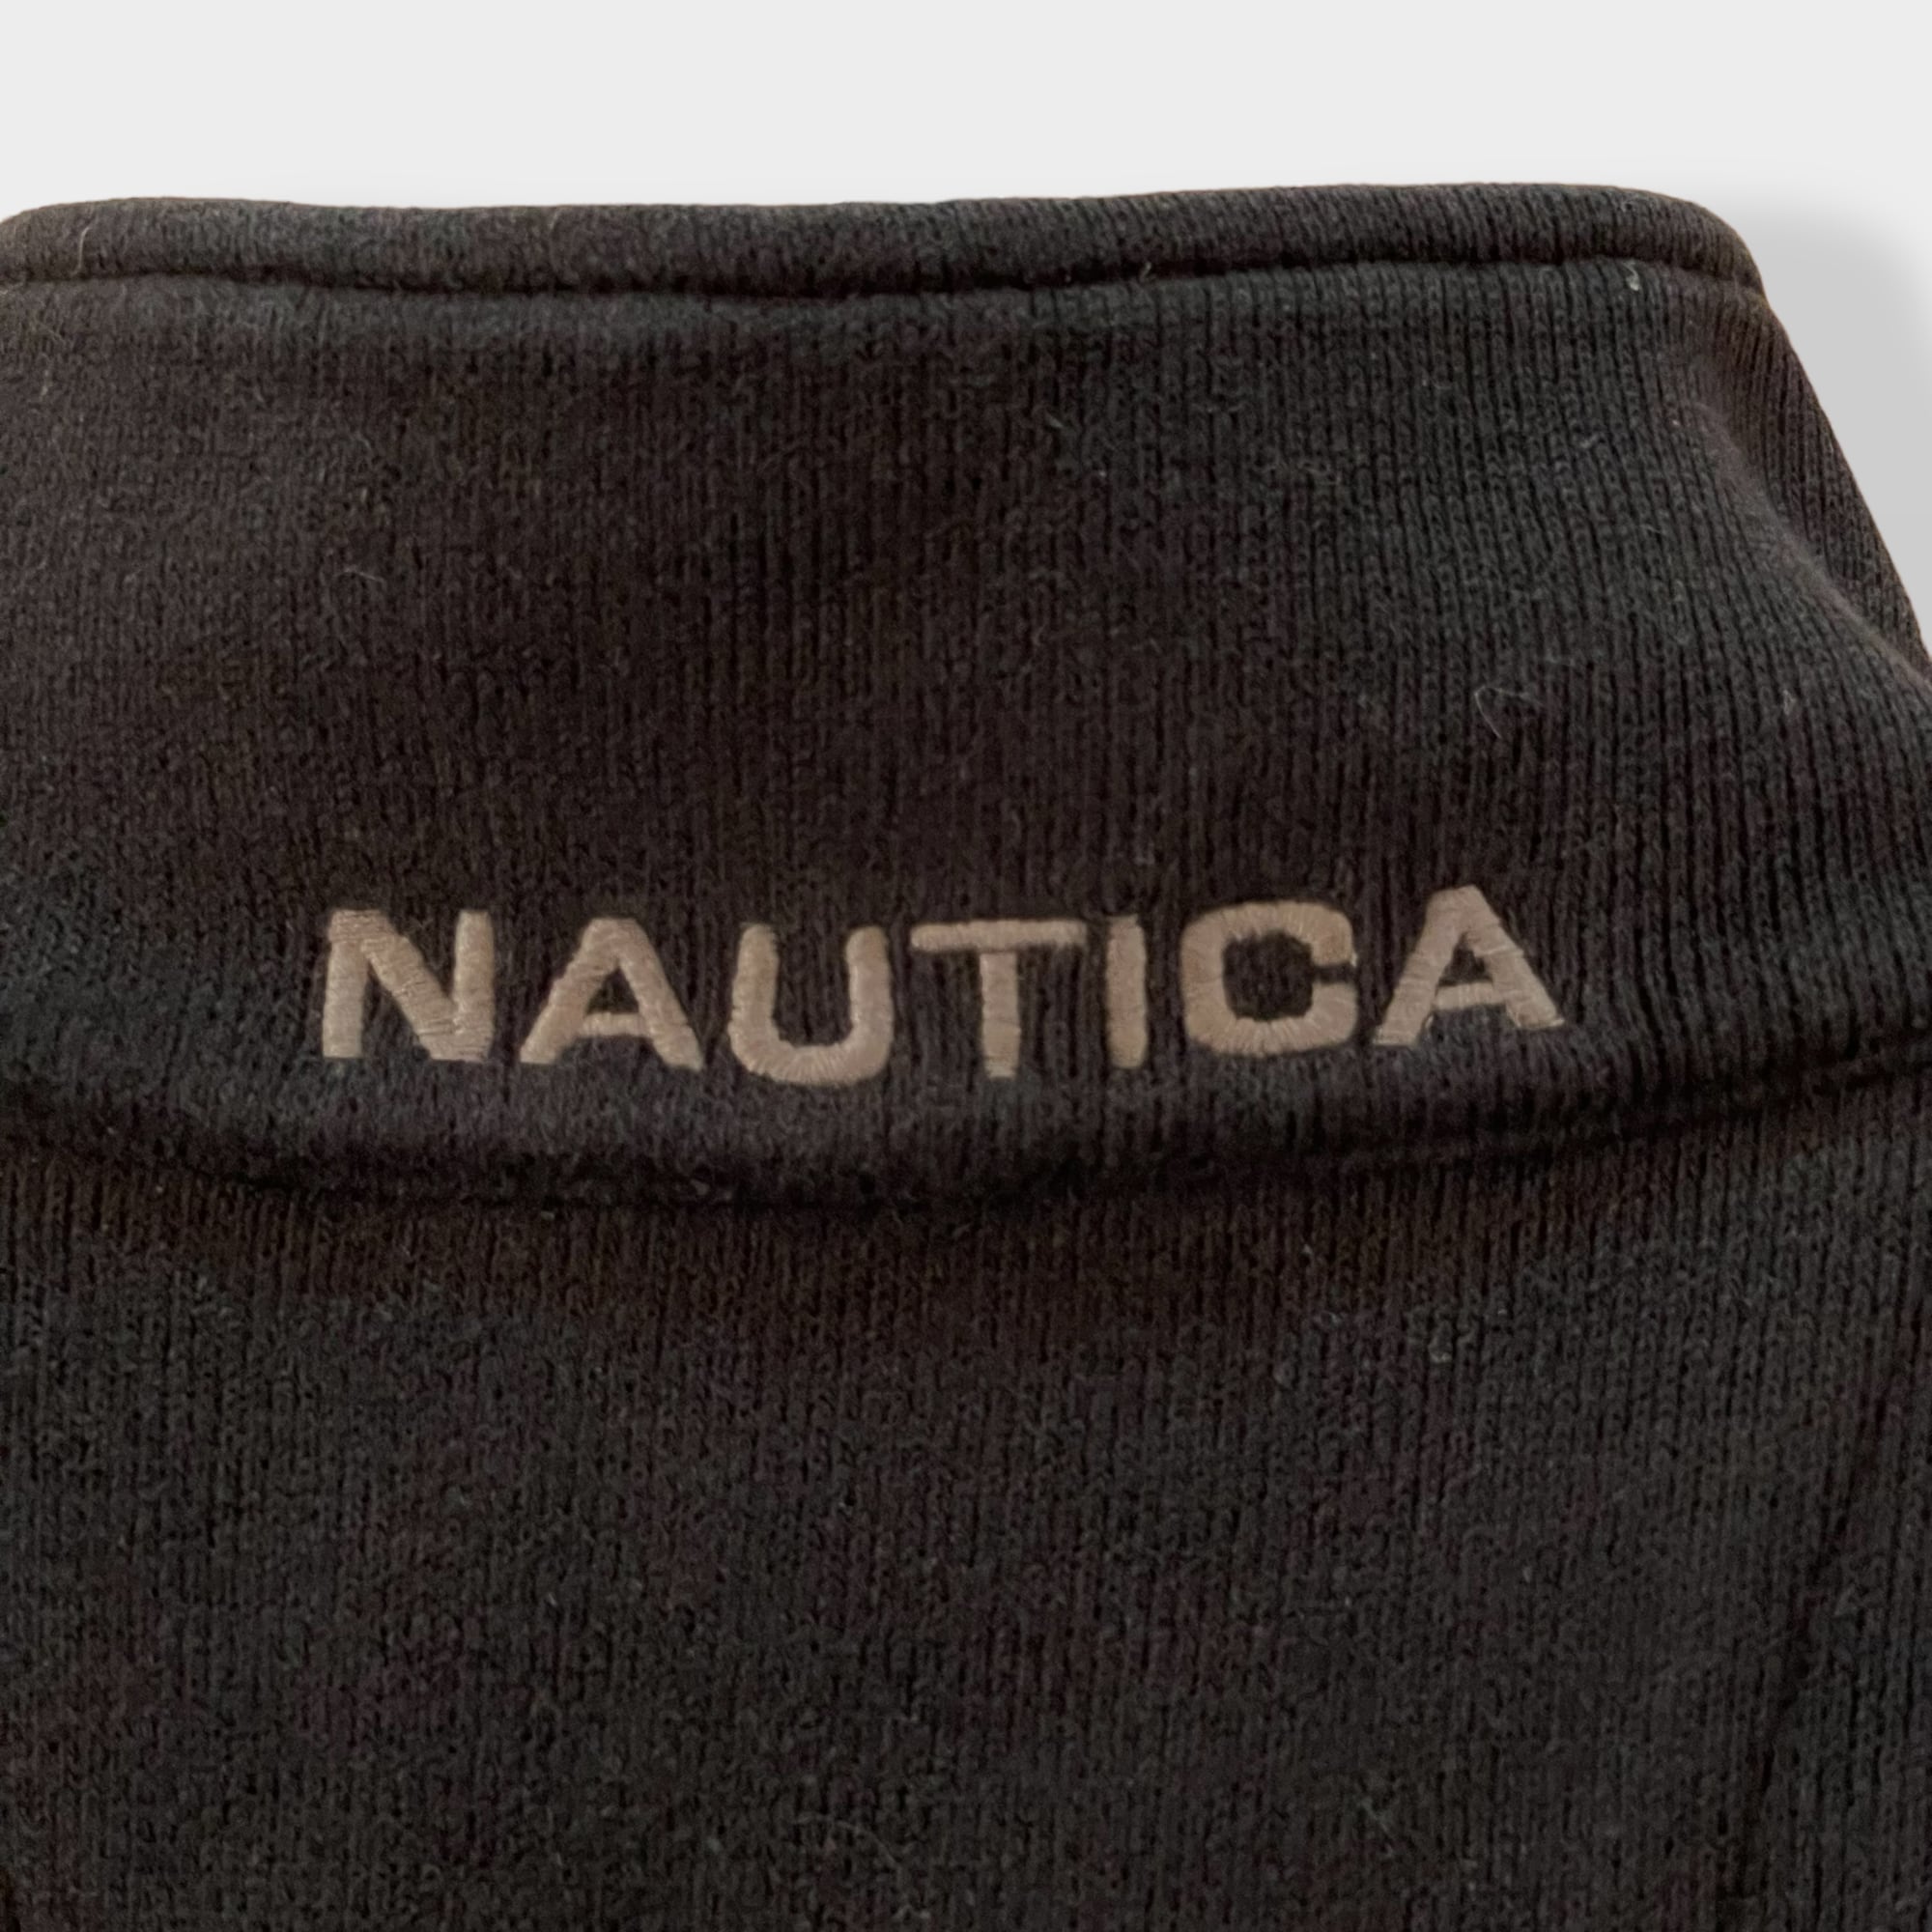 ノーティカ ハーフジップ刺繍ワンポイントロゴ スウェットトレーナー黒ブラック長袖